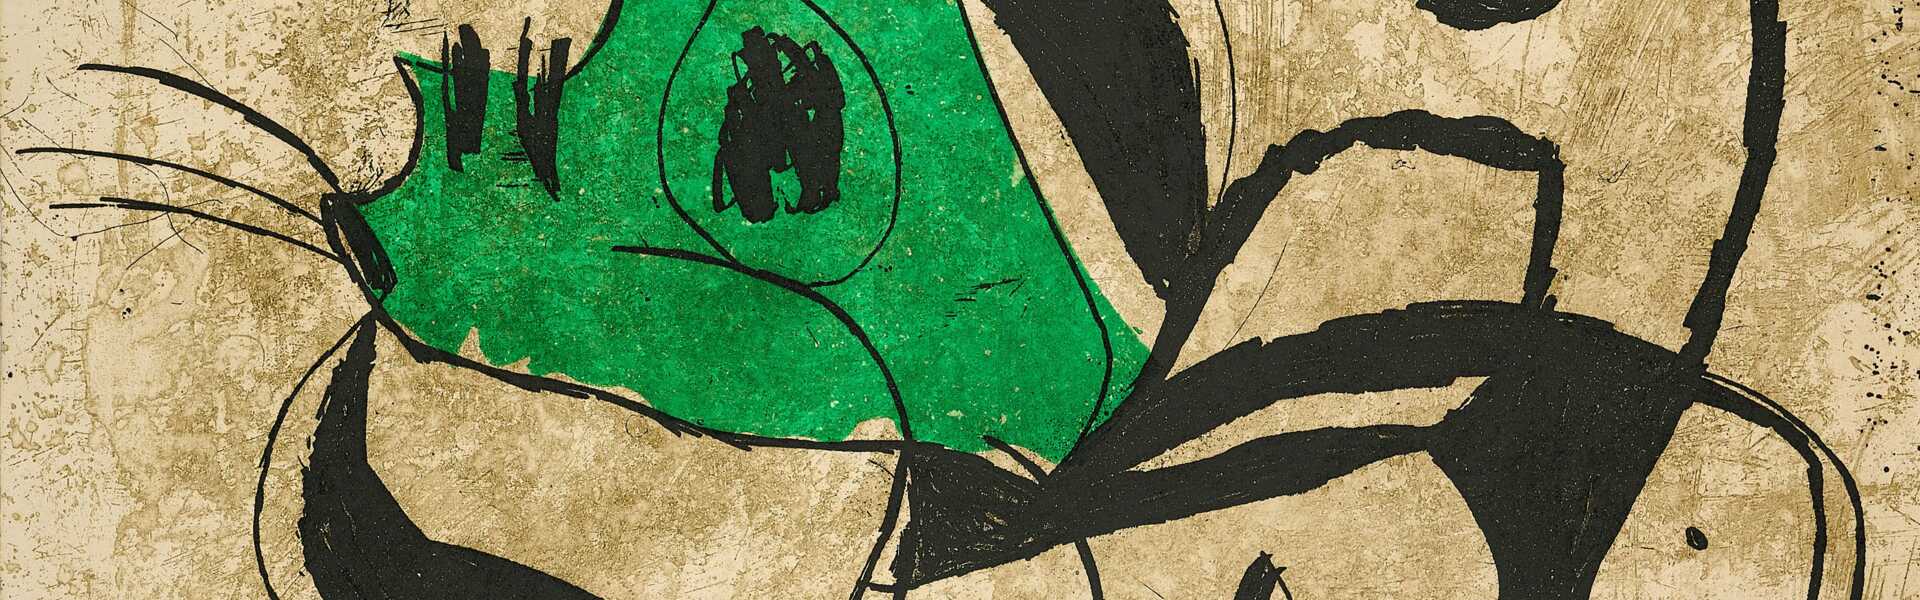 Joan Miró. La Commedia dell'Arte I